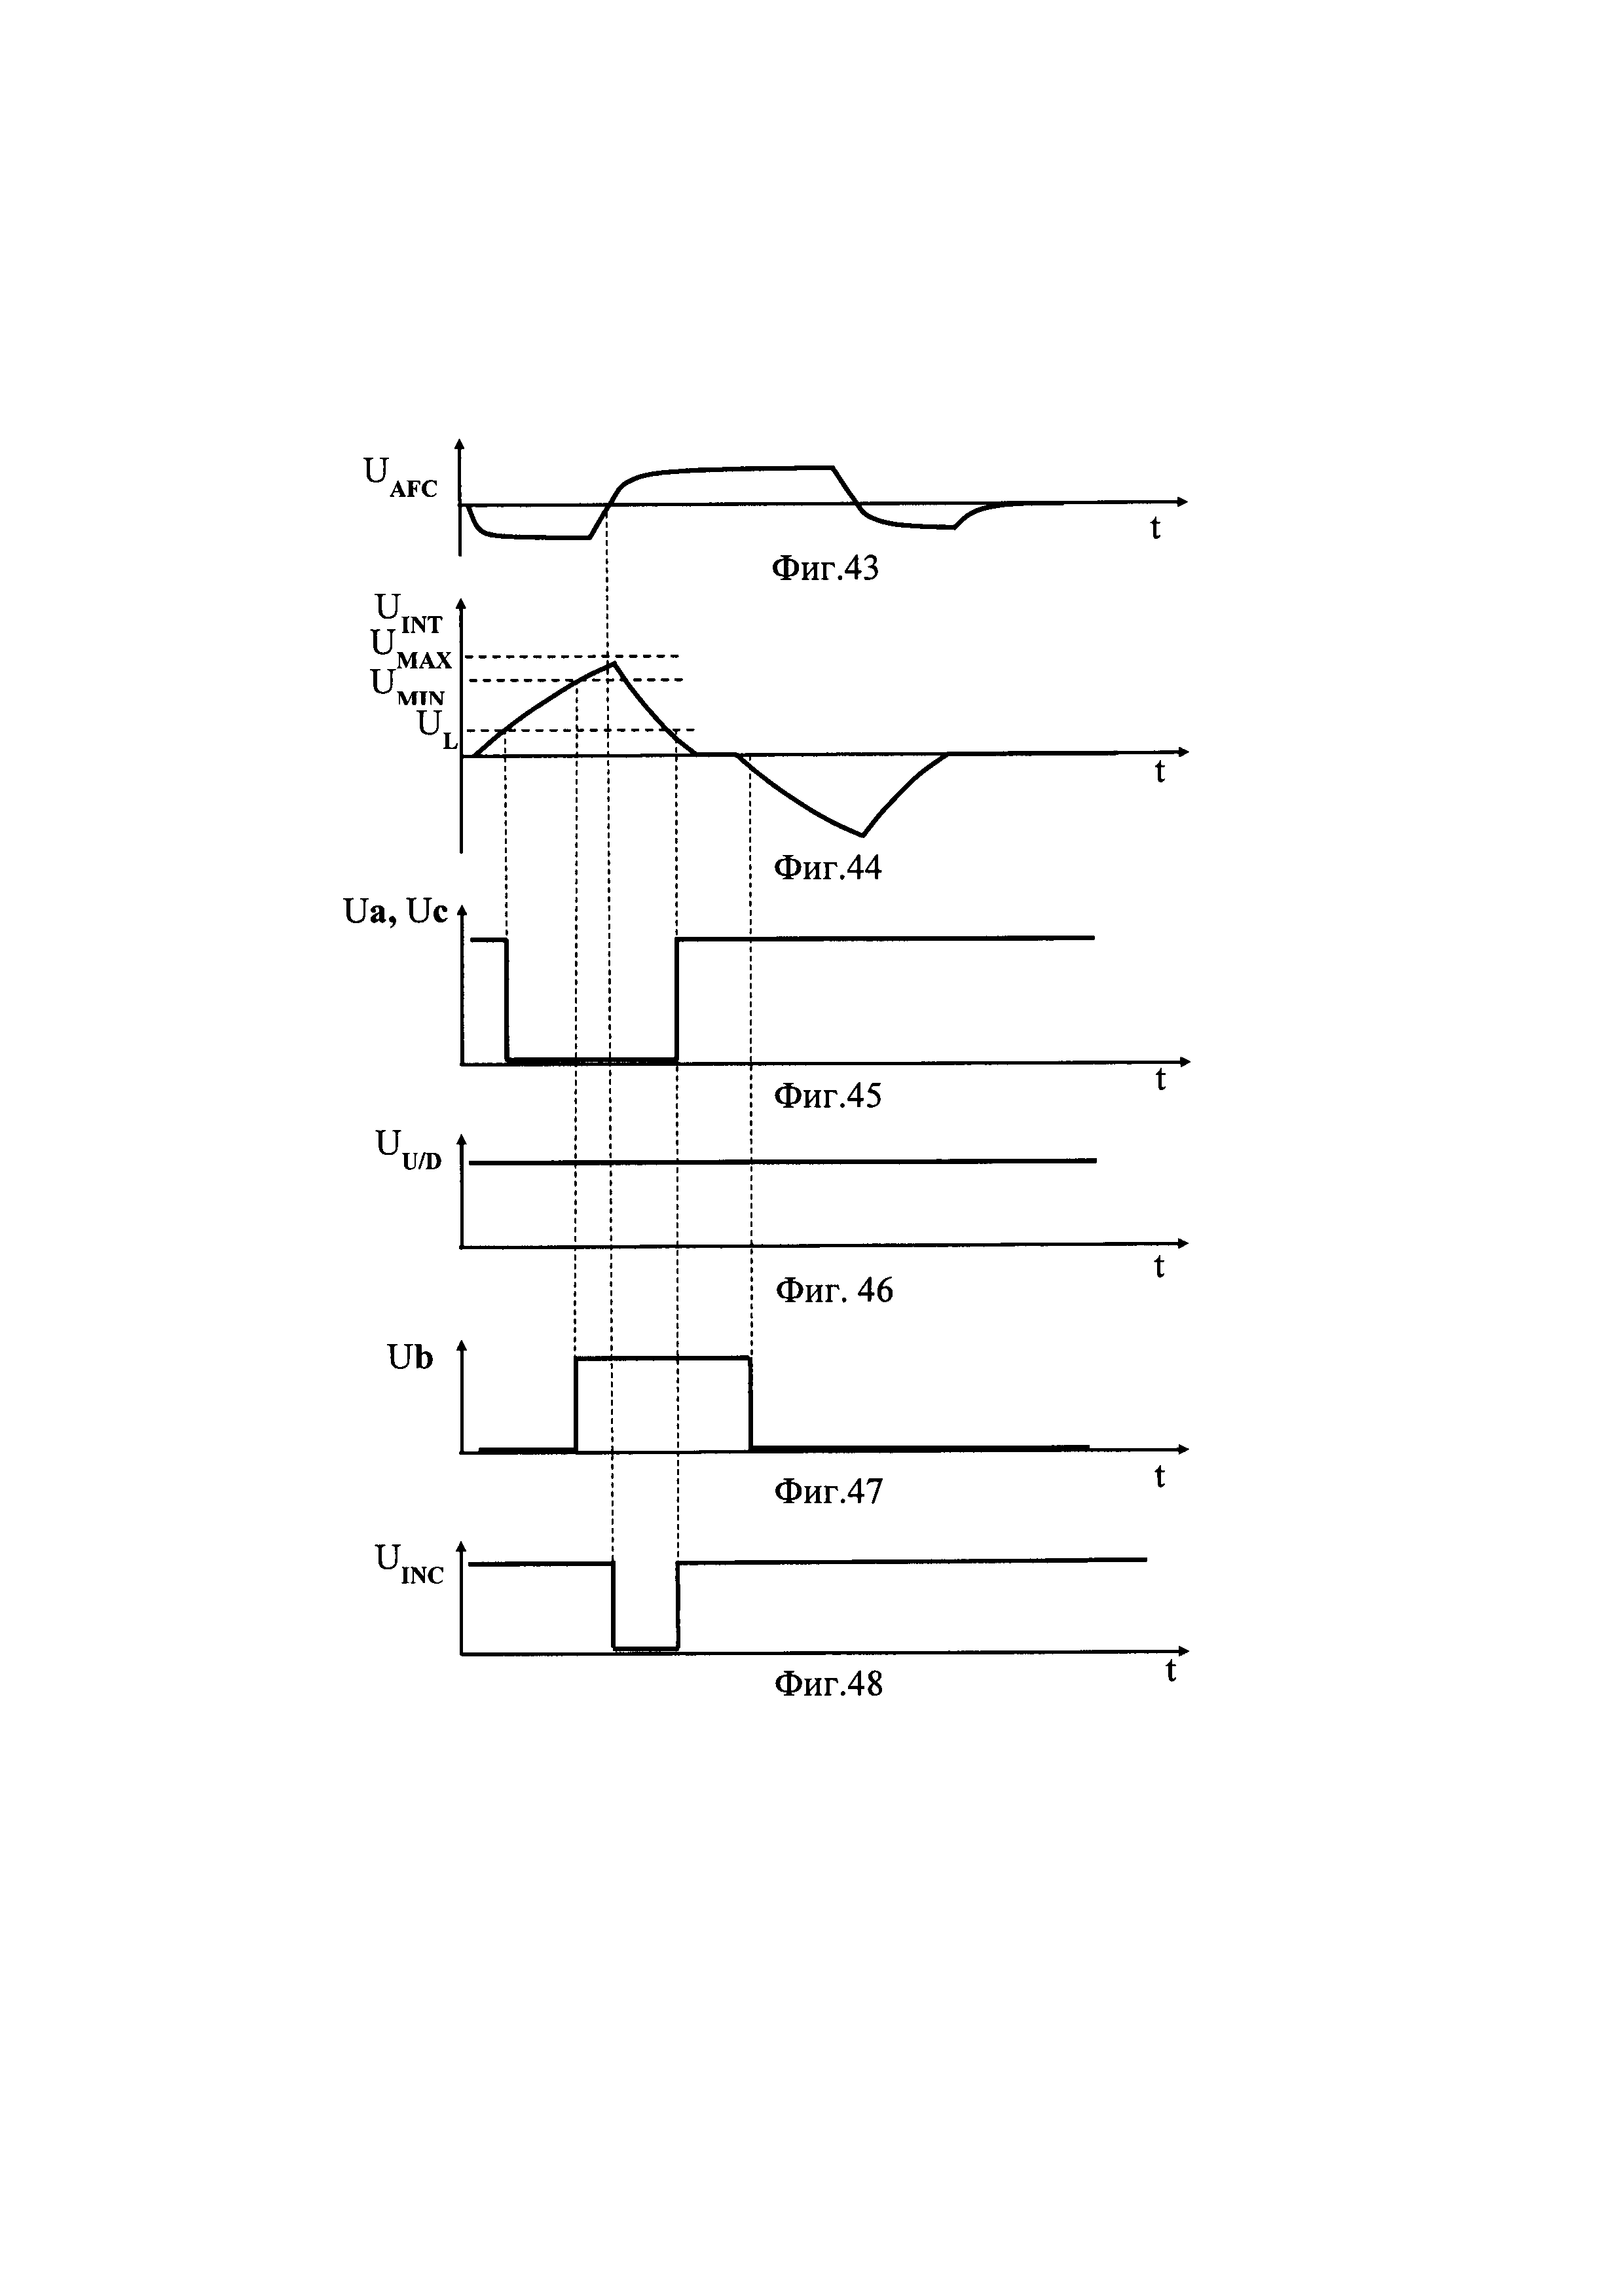 Приёмный тракт сигнала Манчестер с автоматической подстройкой под длину линии связи (варианты)